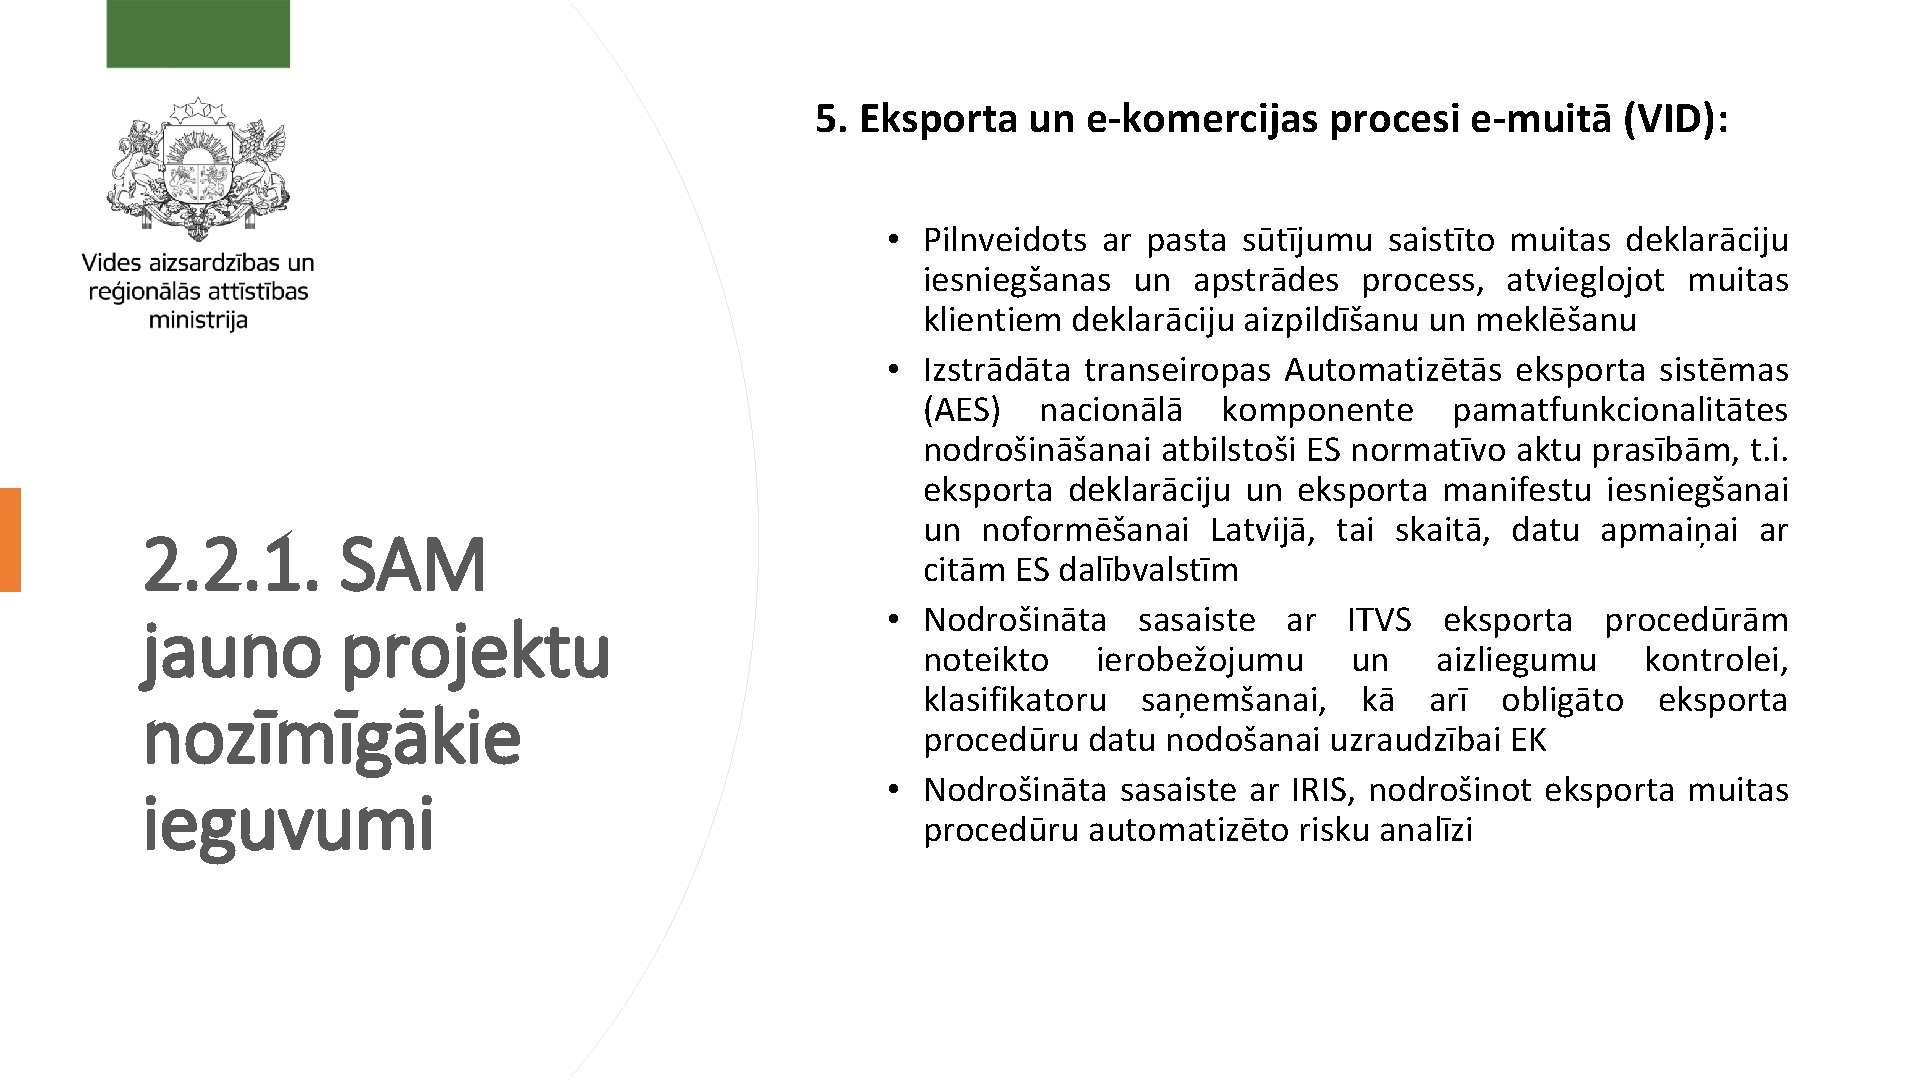 5. Eksporta un e-komercijas procesi e-muitā (VID): 2. 2. 1. SAM jauno projektu nozīmīgākie